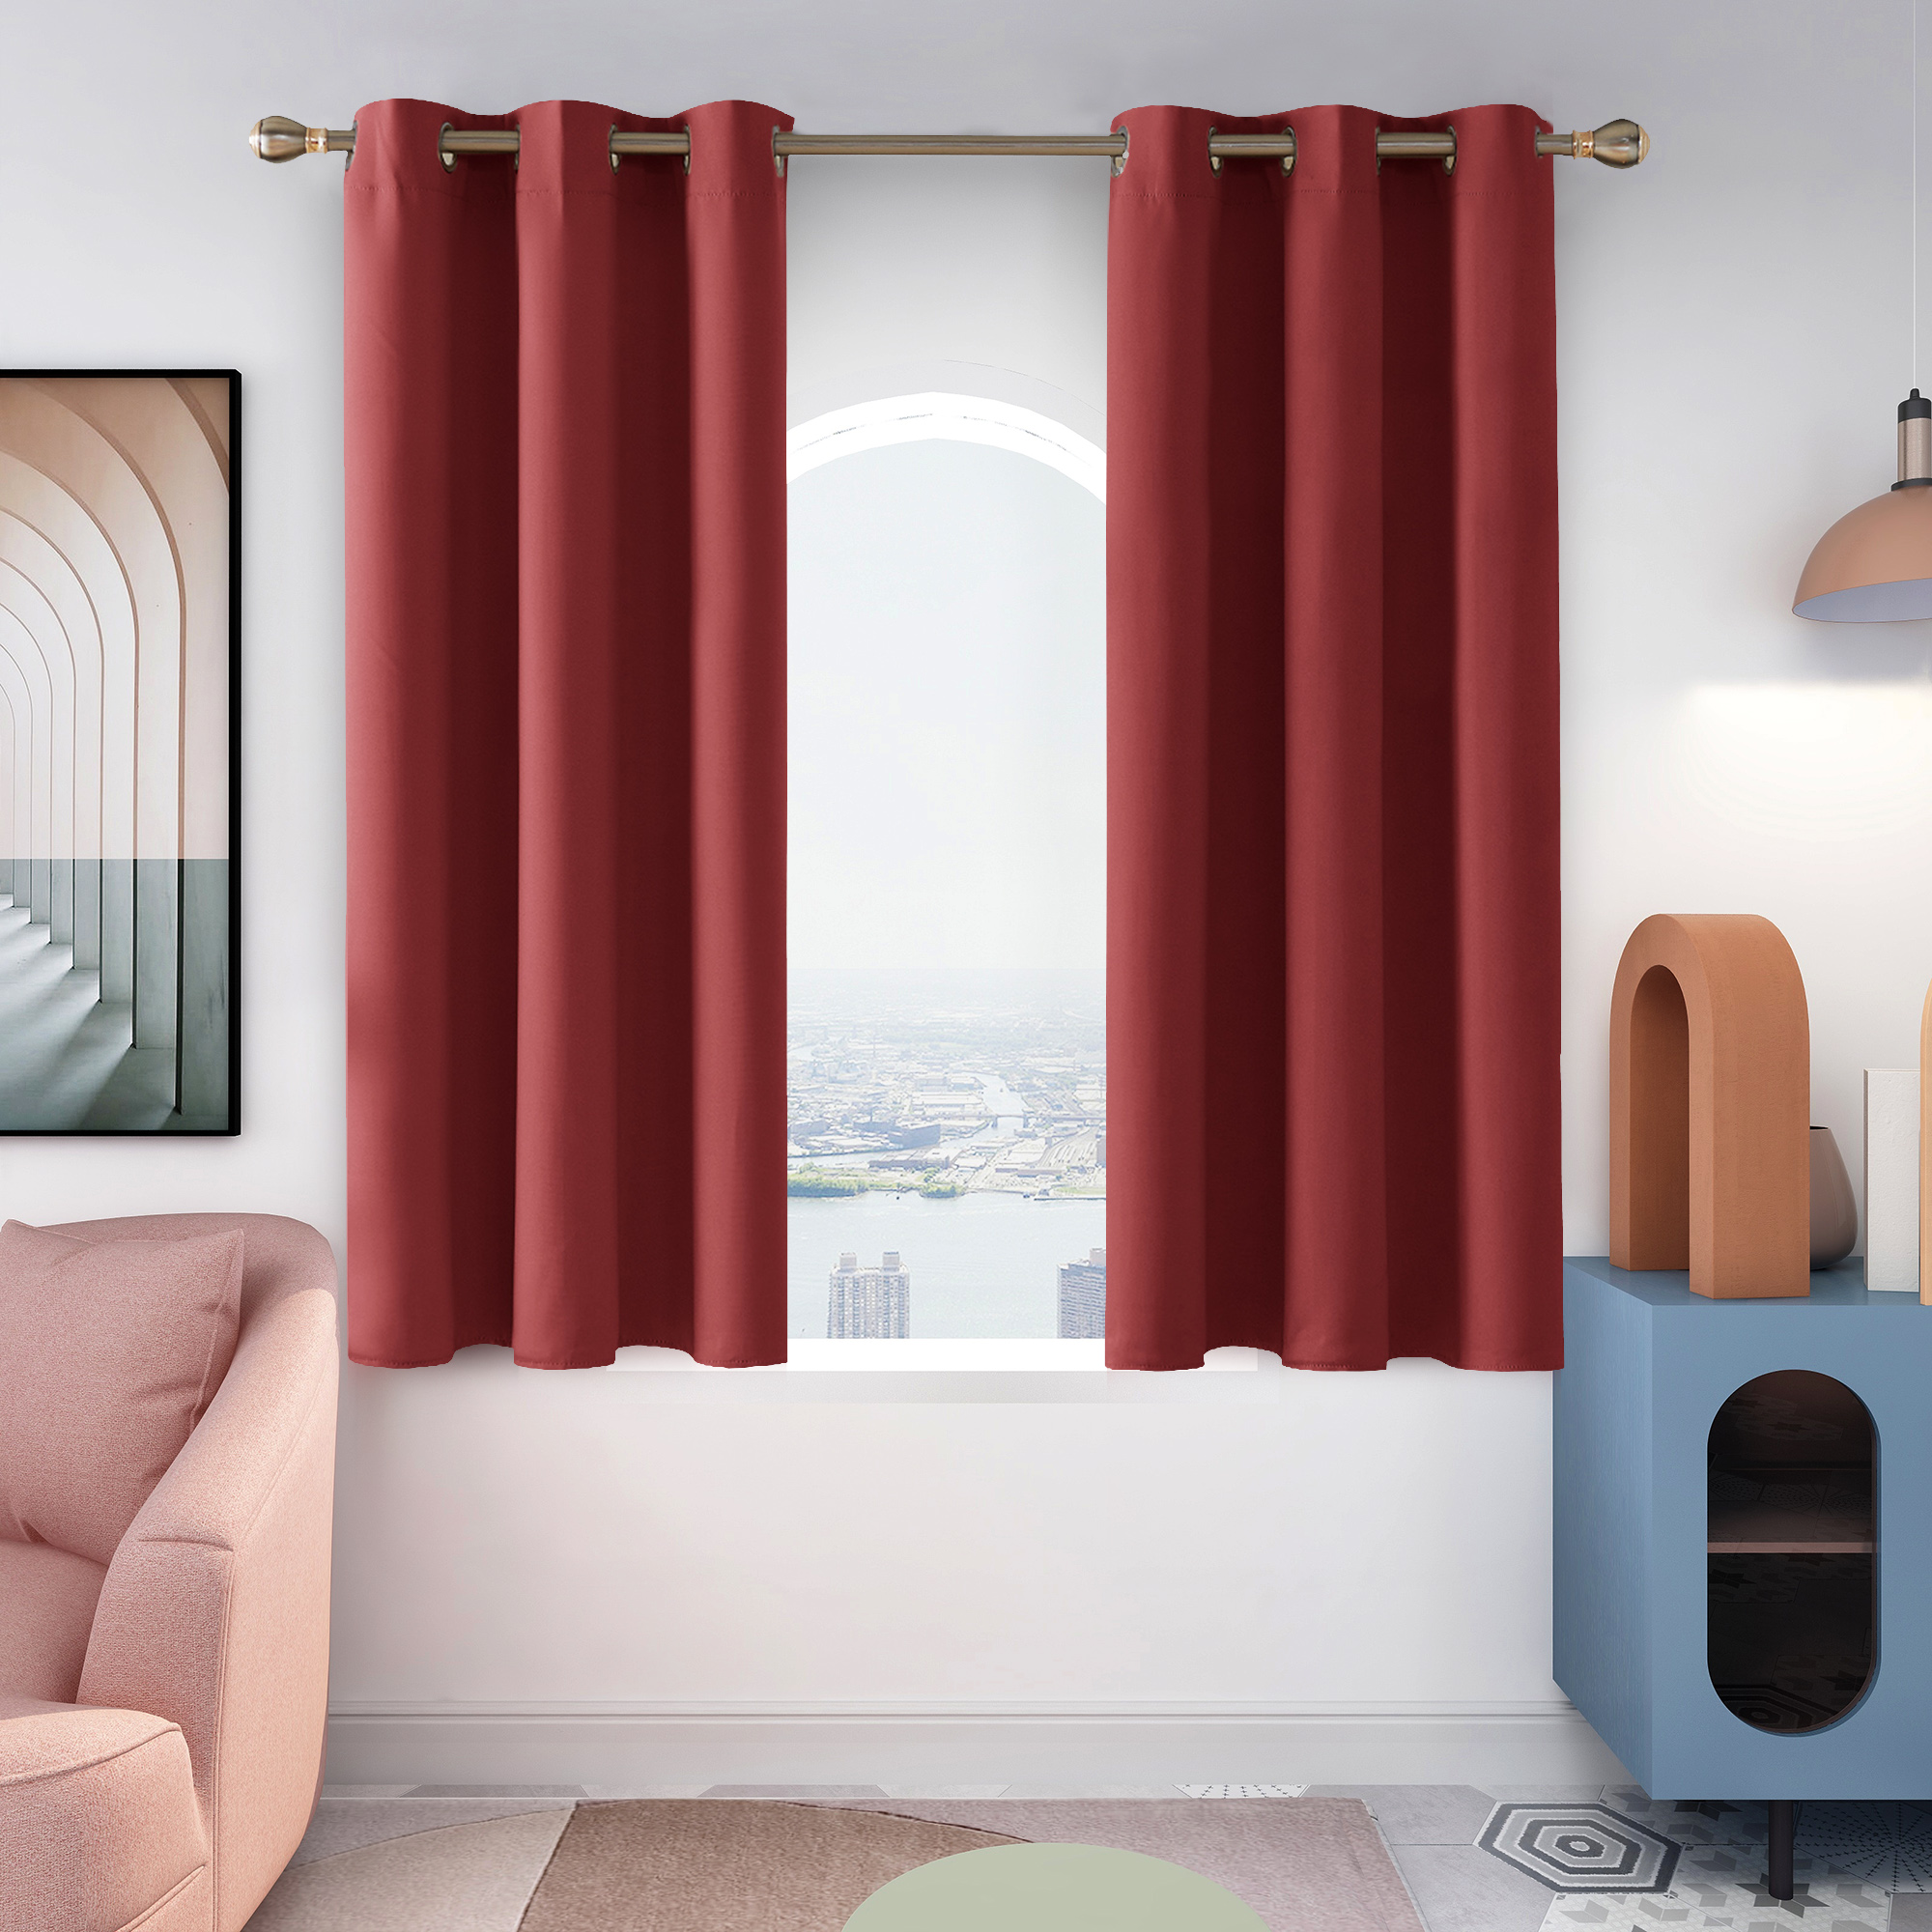 期間限定特価！☆メーカー価格より60%OFF!☆ Deconovo Room Darkening Curtains, Grommet Thermal  Insulated Curtains, 42 In